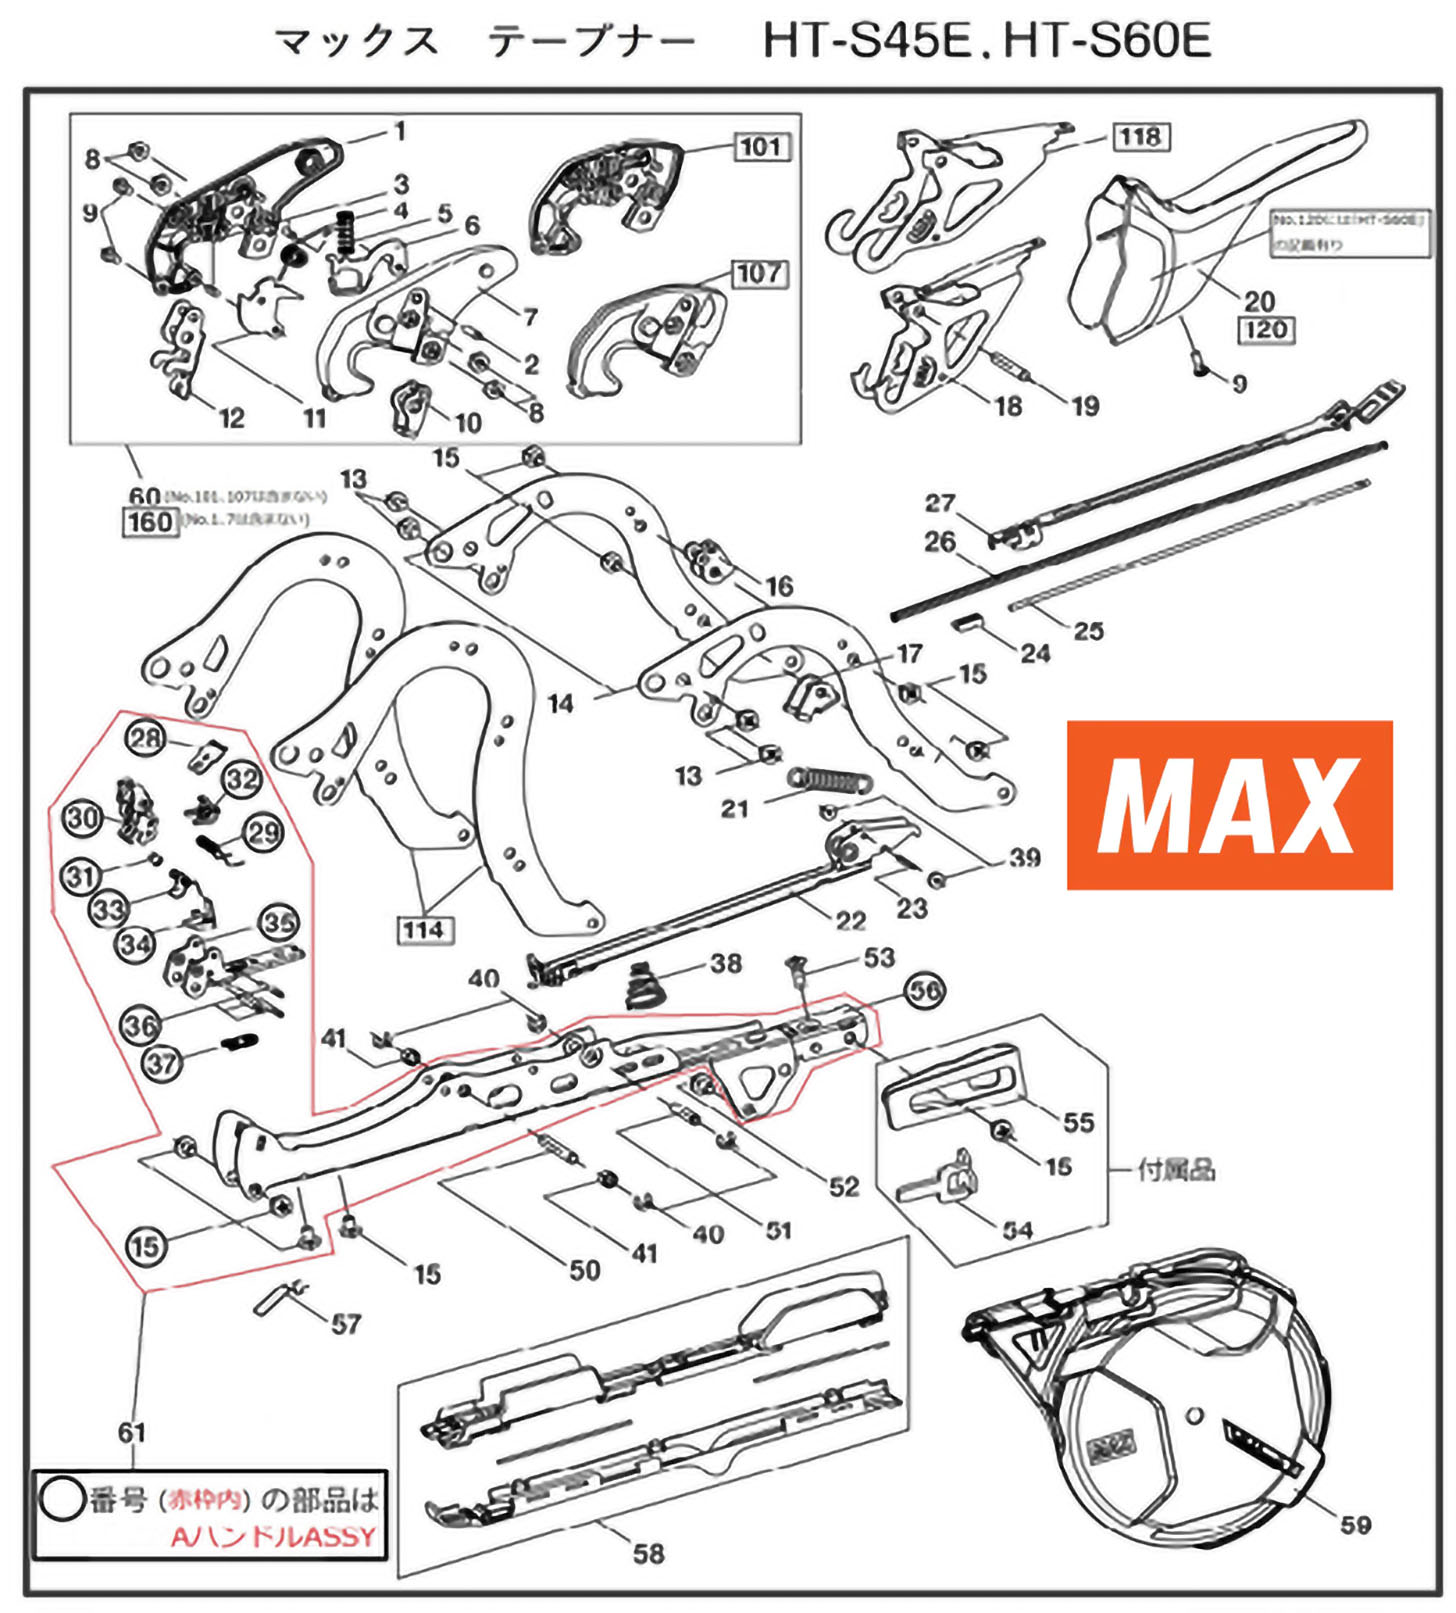 MAX Tapener Part HT70121 MAGAZINE UNIT(S60E) Fits MAX HT-S45E #22